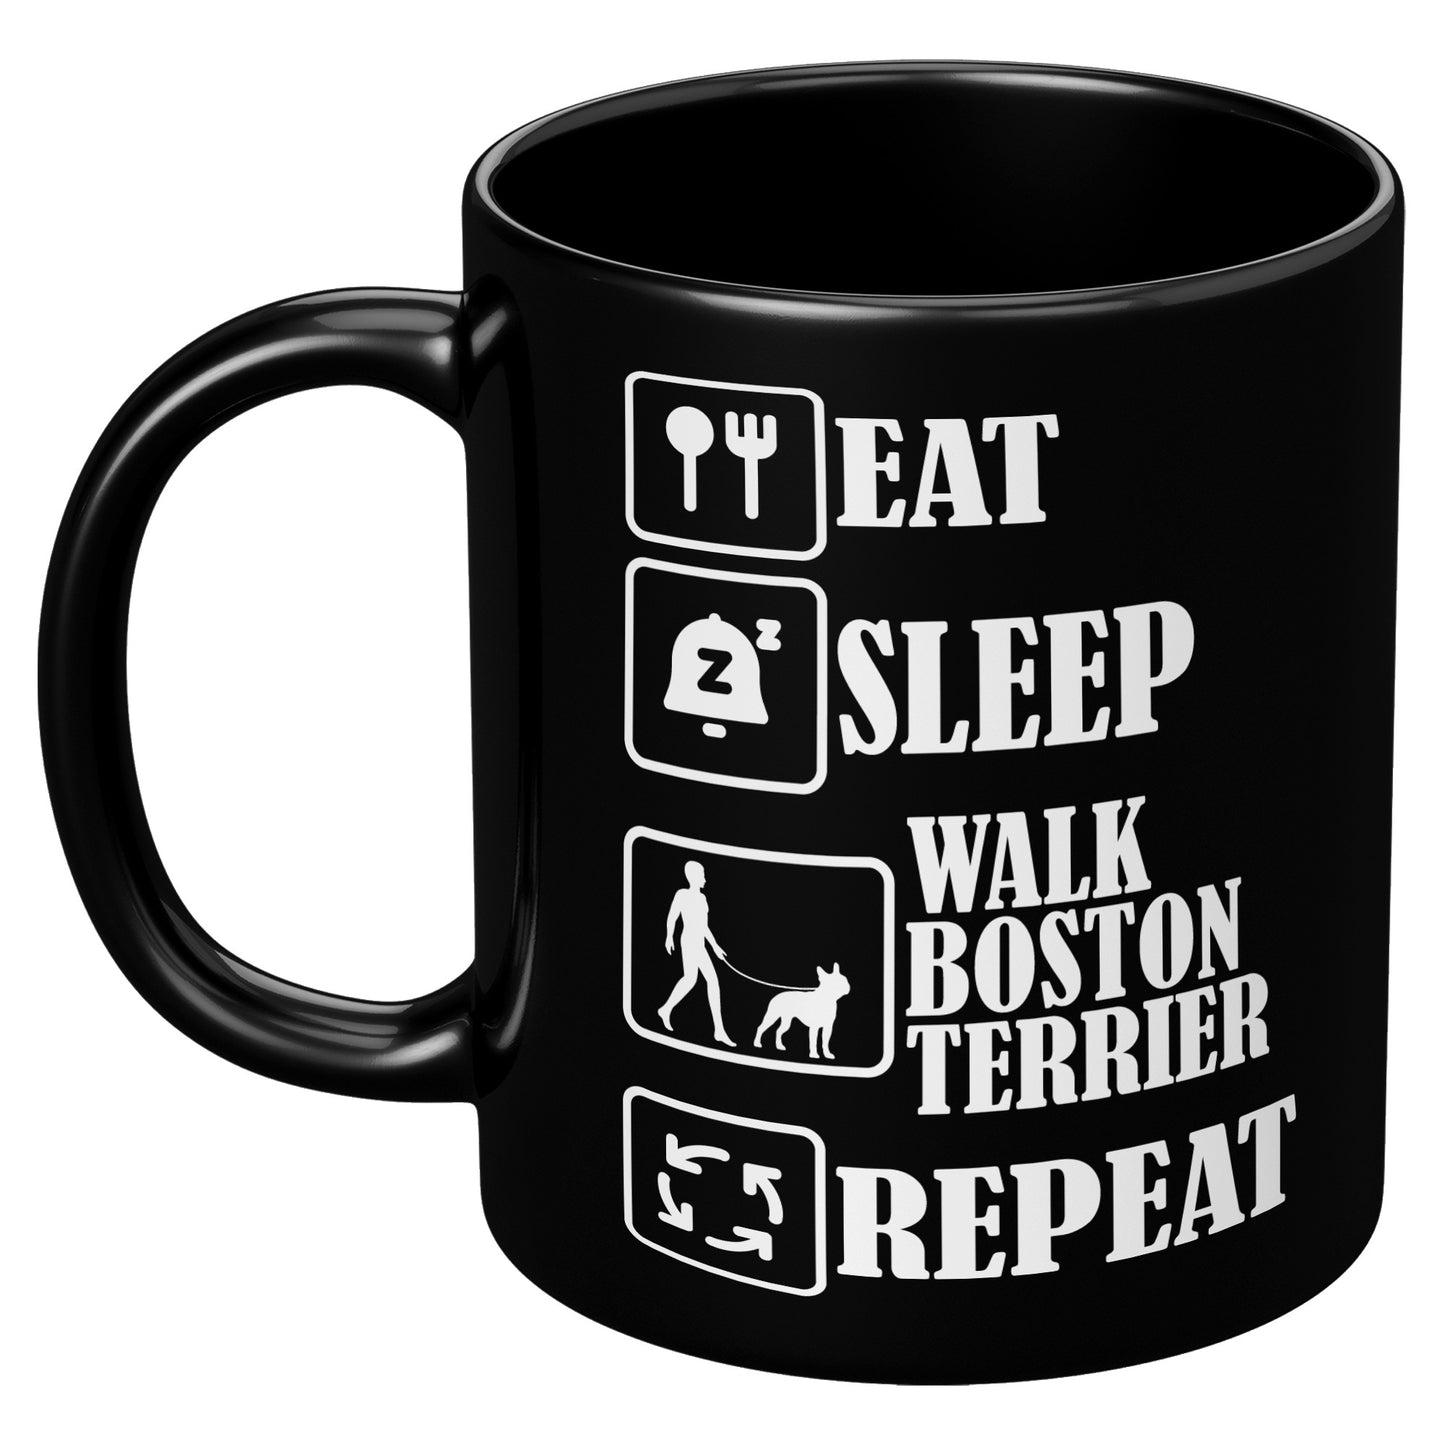 Alice-Mug for Boston Terrier lovers